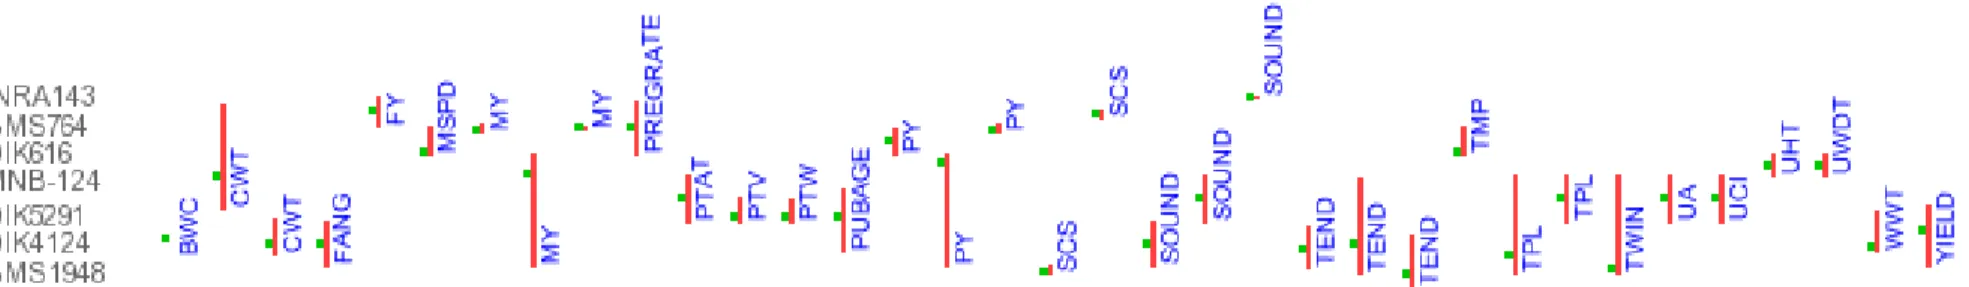 Figura 7: QTLs descritos no cromossomo 29 dos bovinos. Linha vermelha: posição do QTL no cromossomo; BW: Birth weight; 